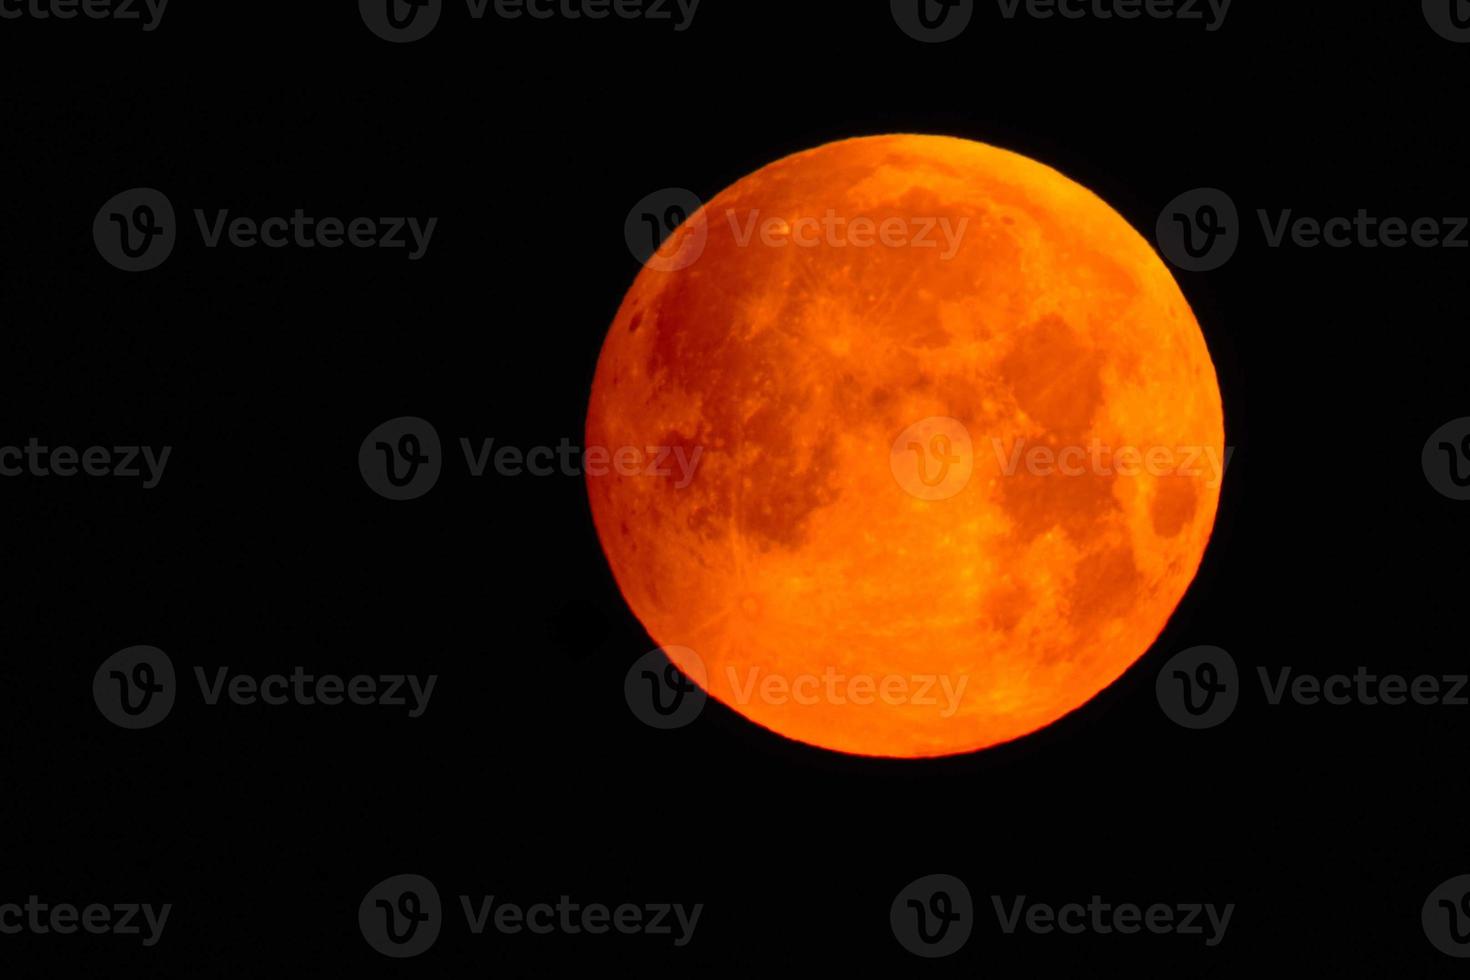 bloem bloed vol maan in mei binnenkort voordat de maan- verduistering met rood kleur foto